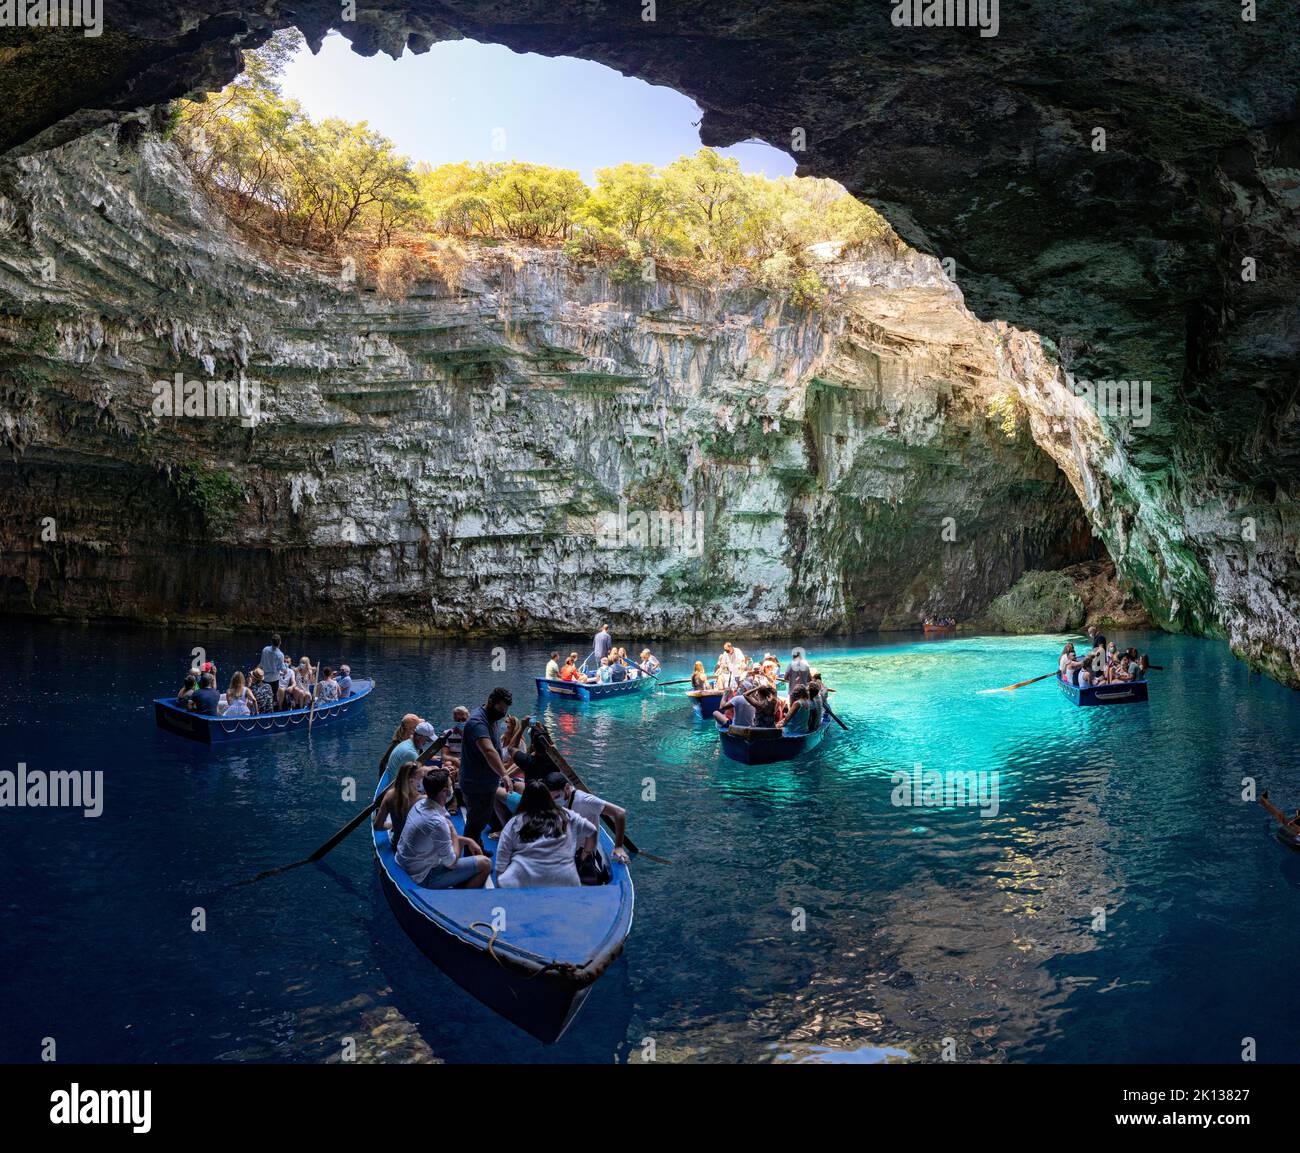 Barche turistiche nelle acque cristalline blu della grotta del lago Melissani, Cefalonia, Isole IONIE, Isole greche, Grecia, Europa Foto Stock